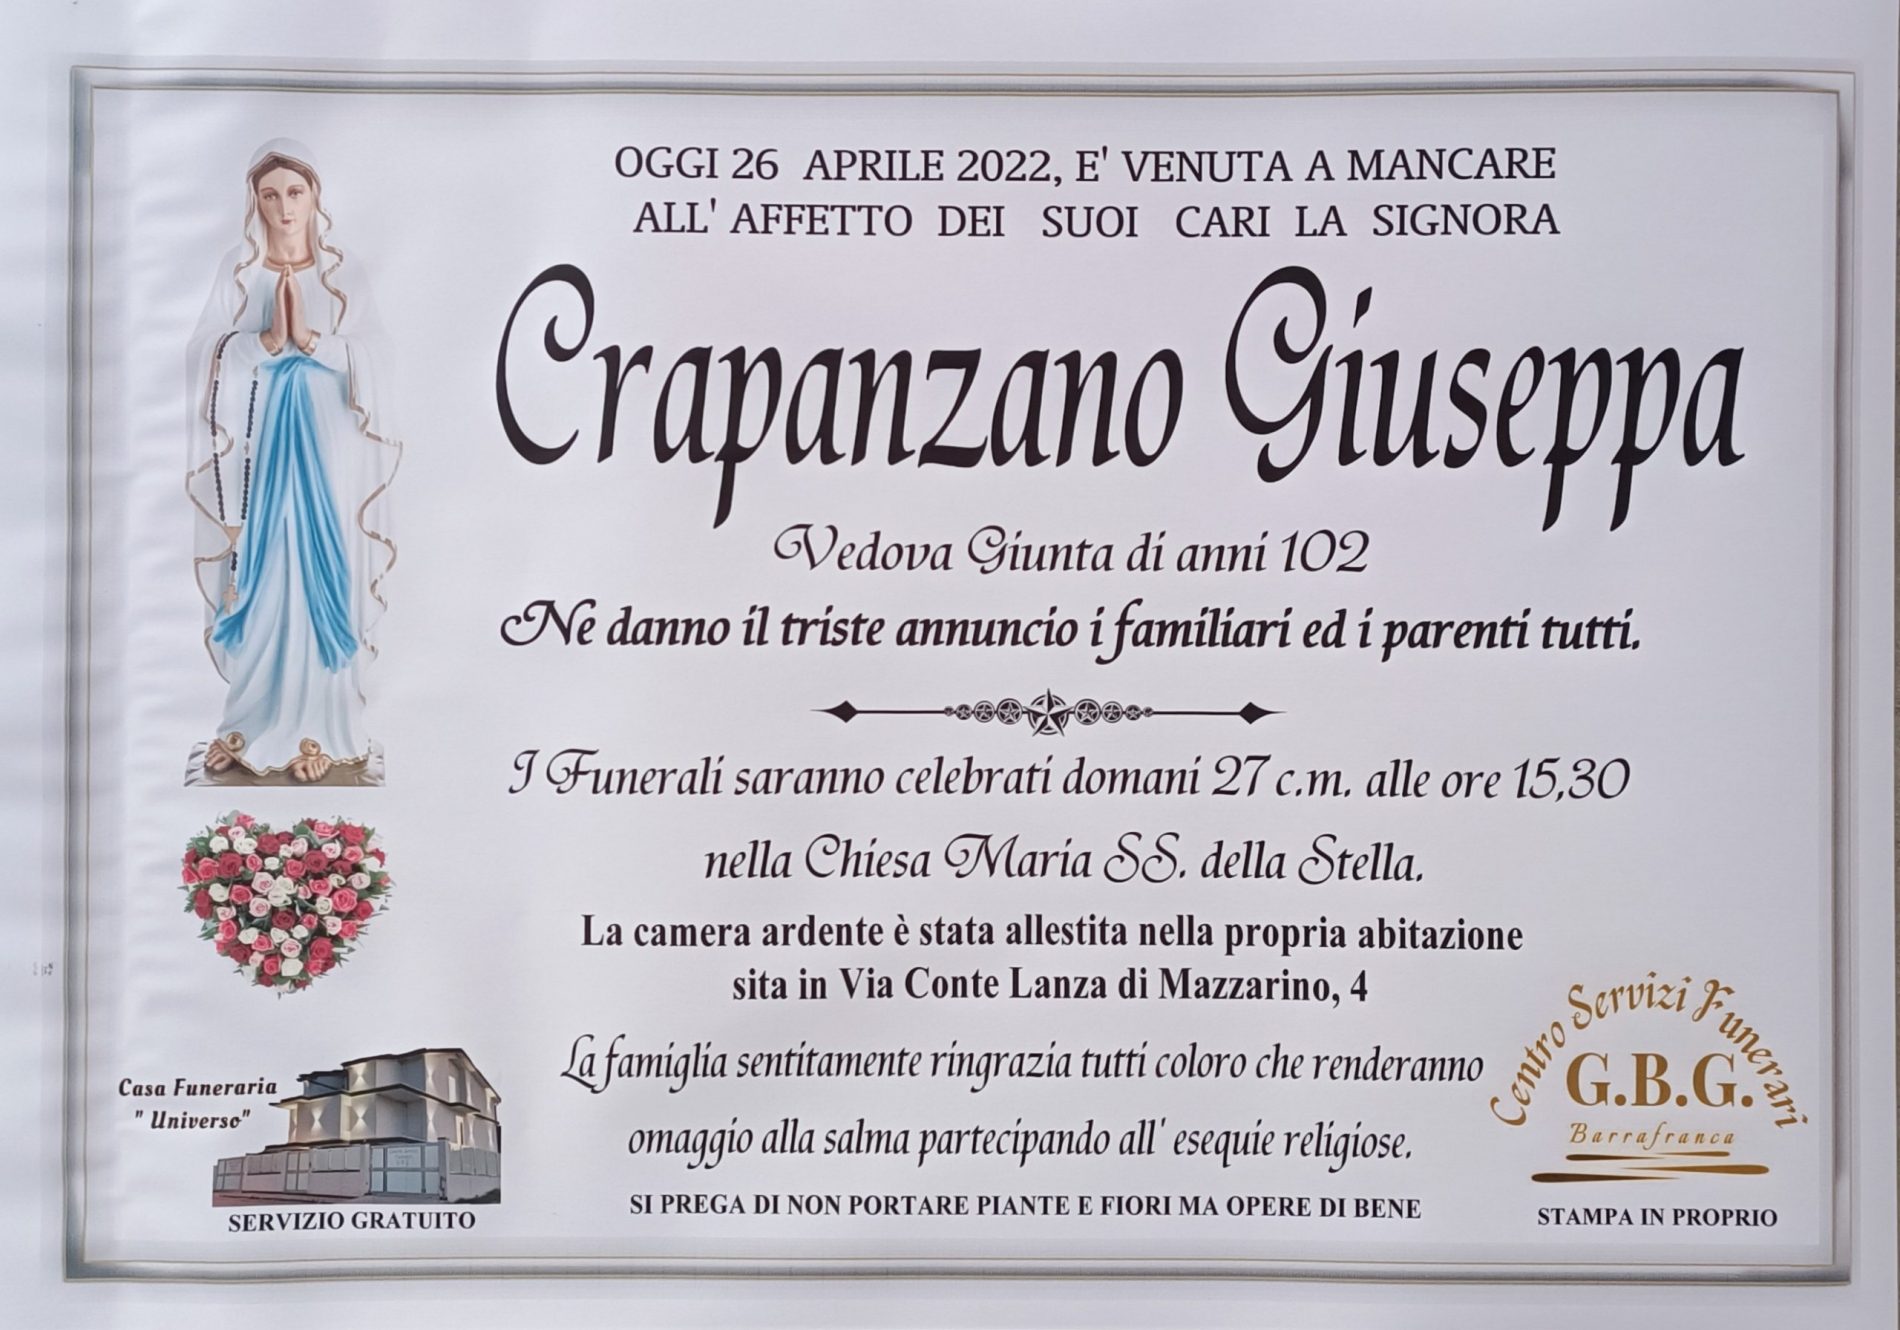 Annuncio servizi funerari agenzia G.B.G. signora Crapanzano Giuseppaved. Giunta di anni 102